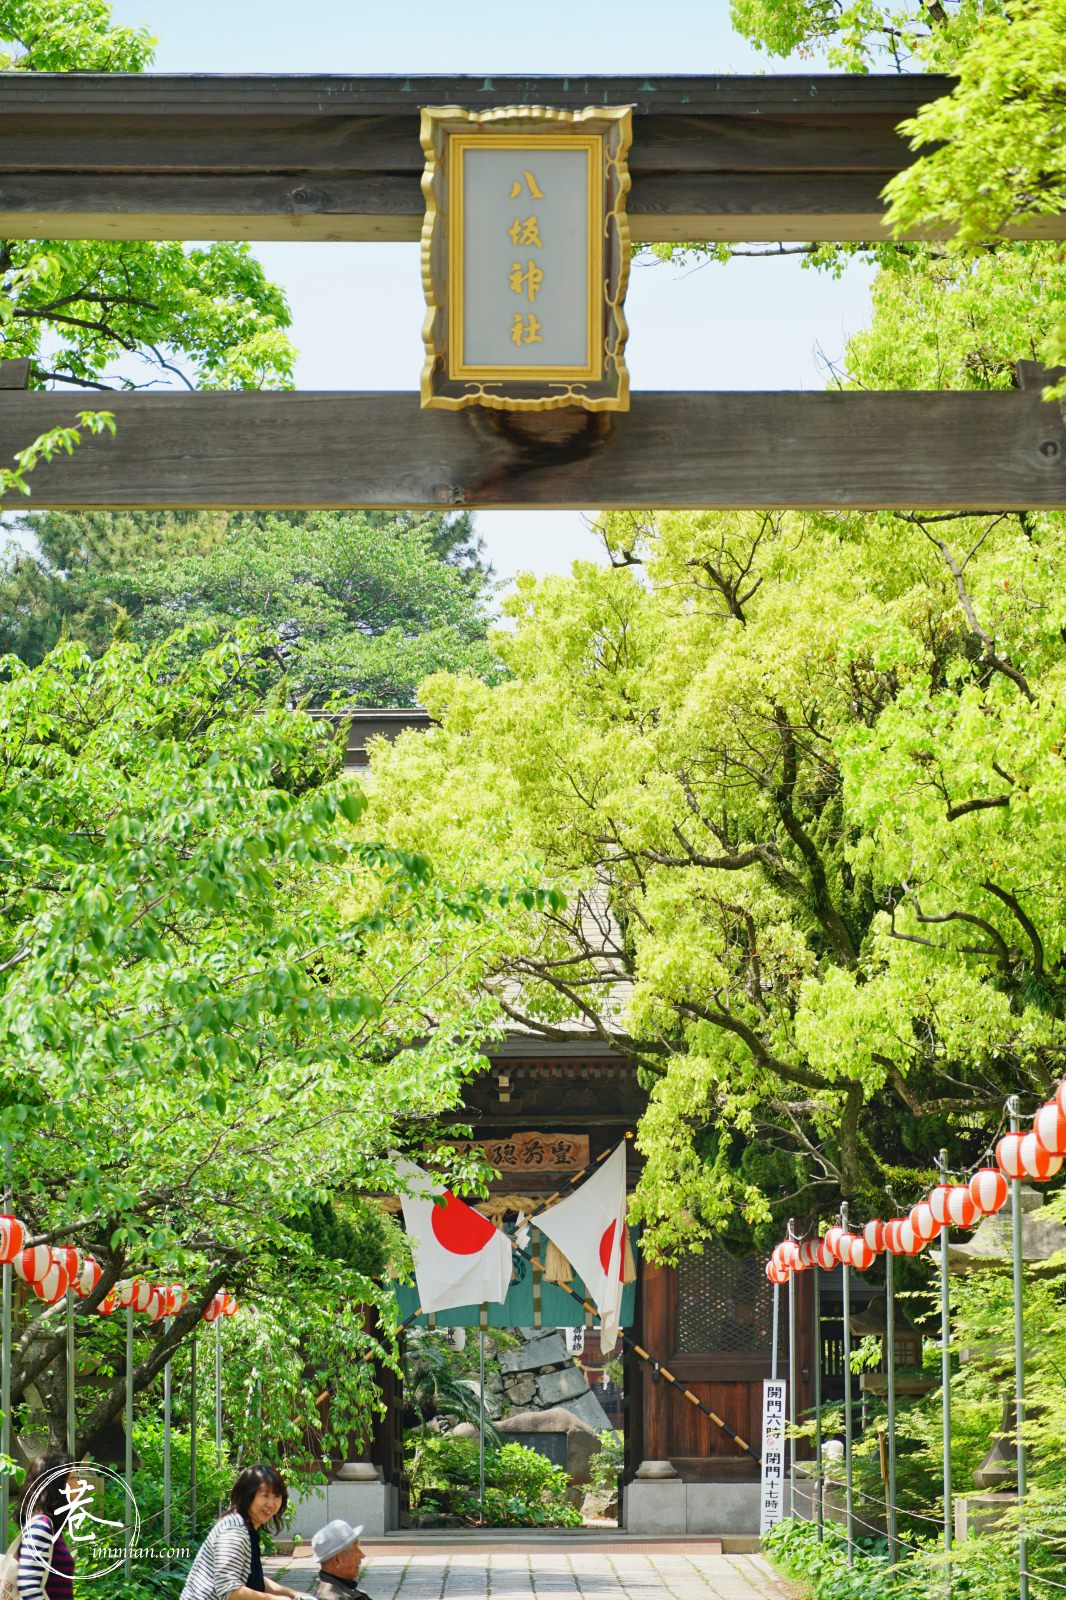 小倉景點 小倉城 市區內悠閒輕鬆的景點 可串聯旦過市場 八坂神社 巷子裡的生活